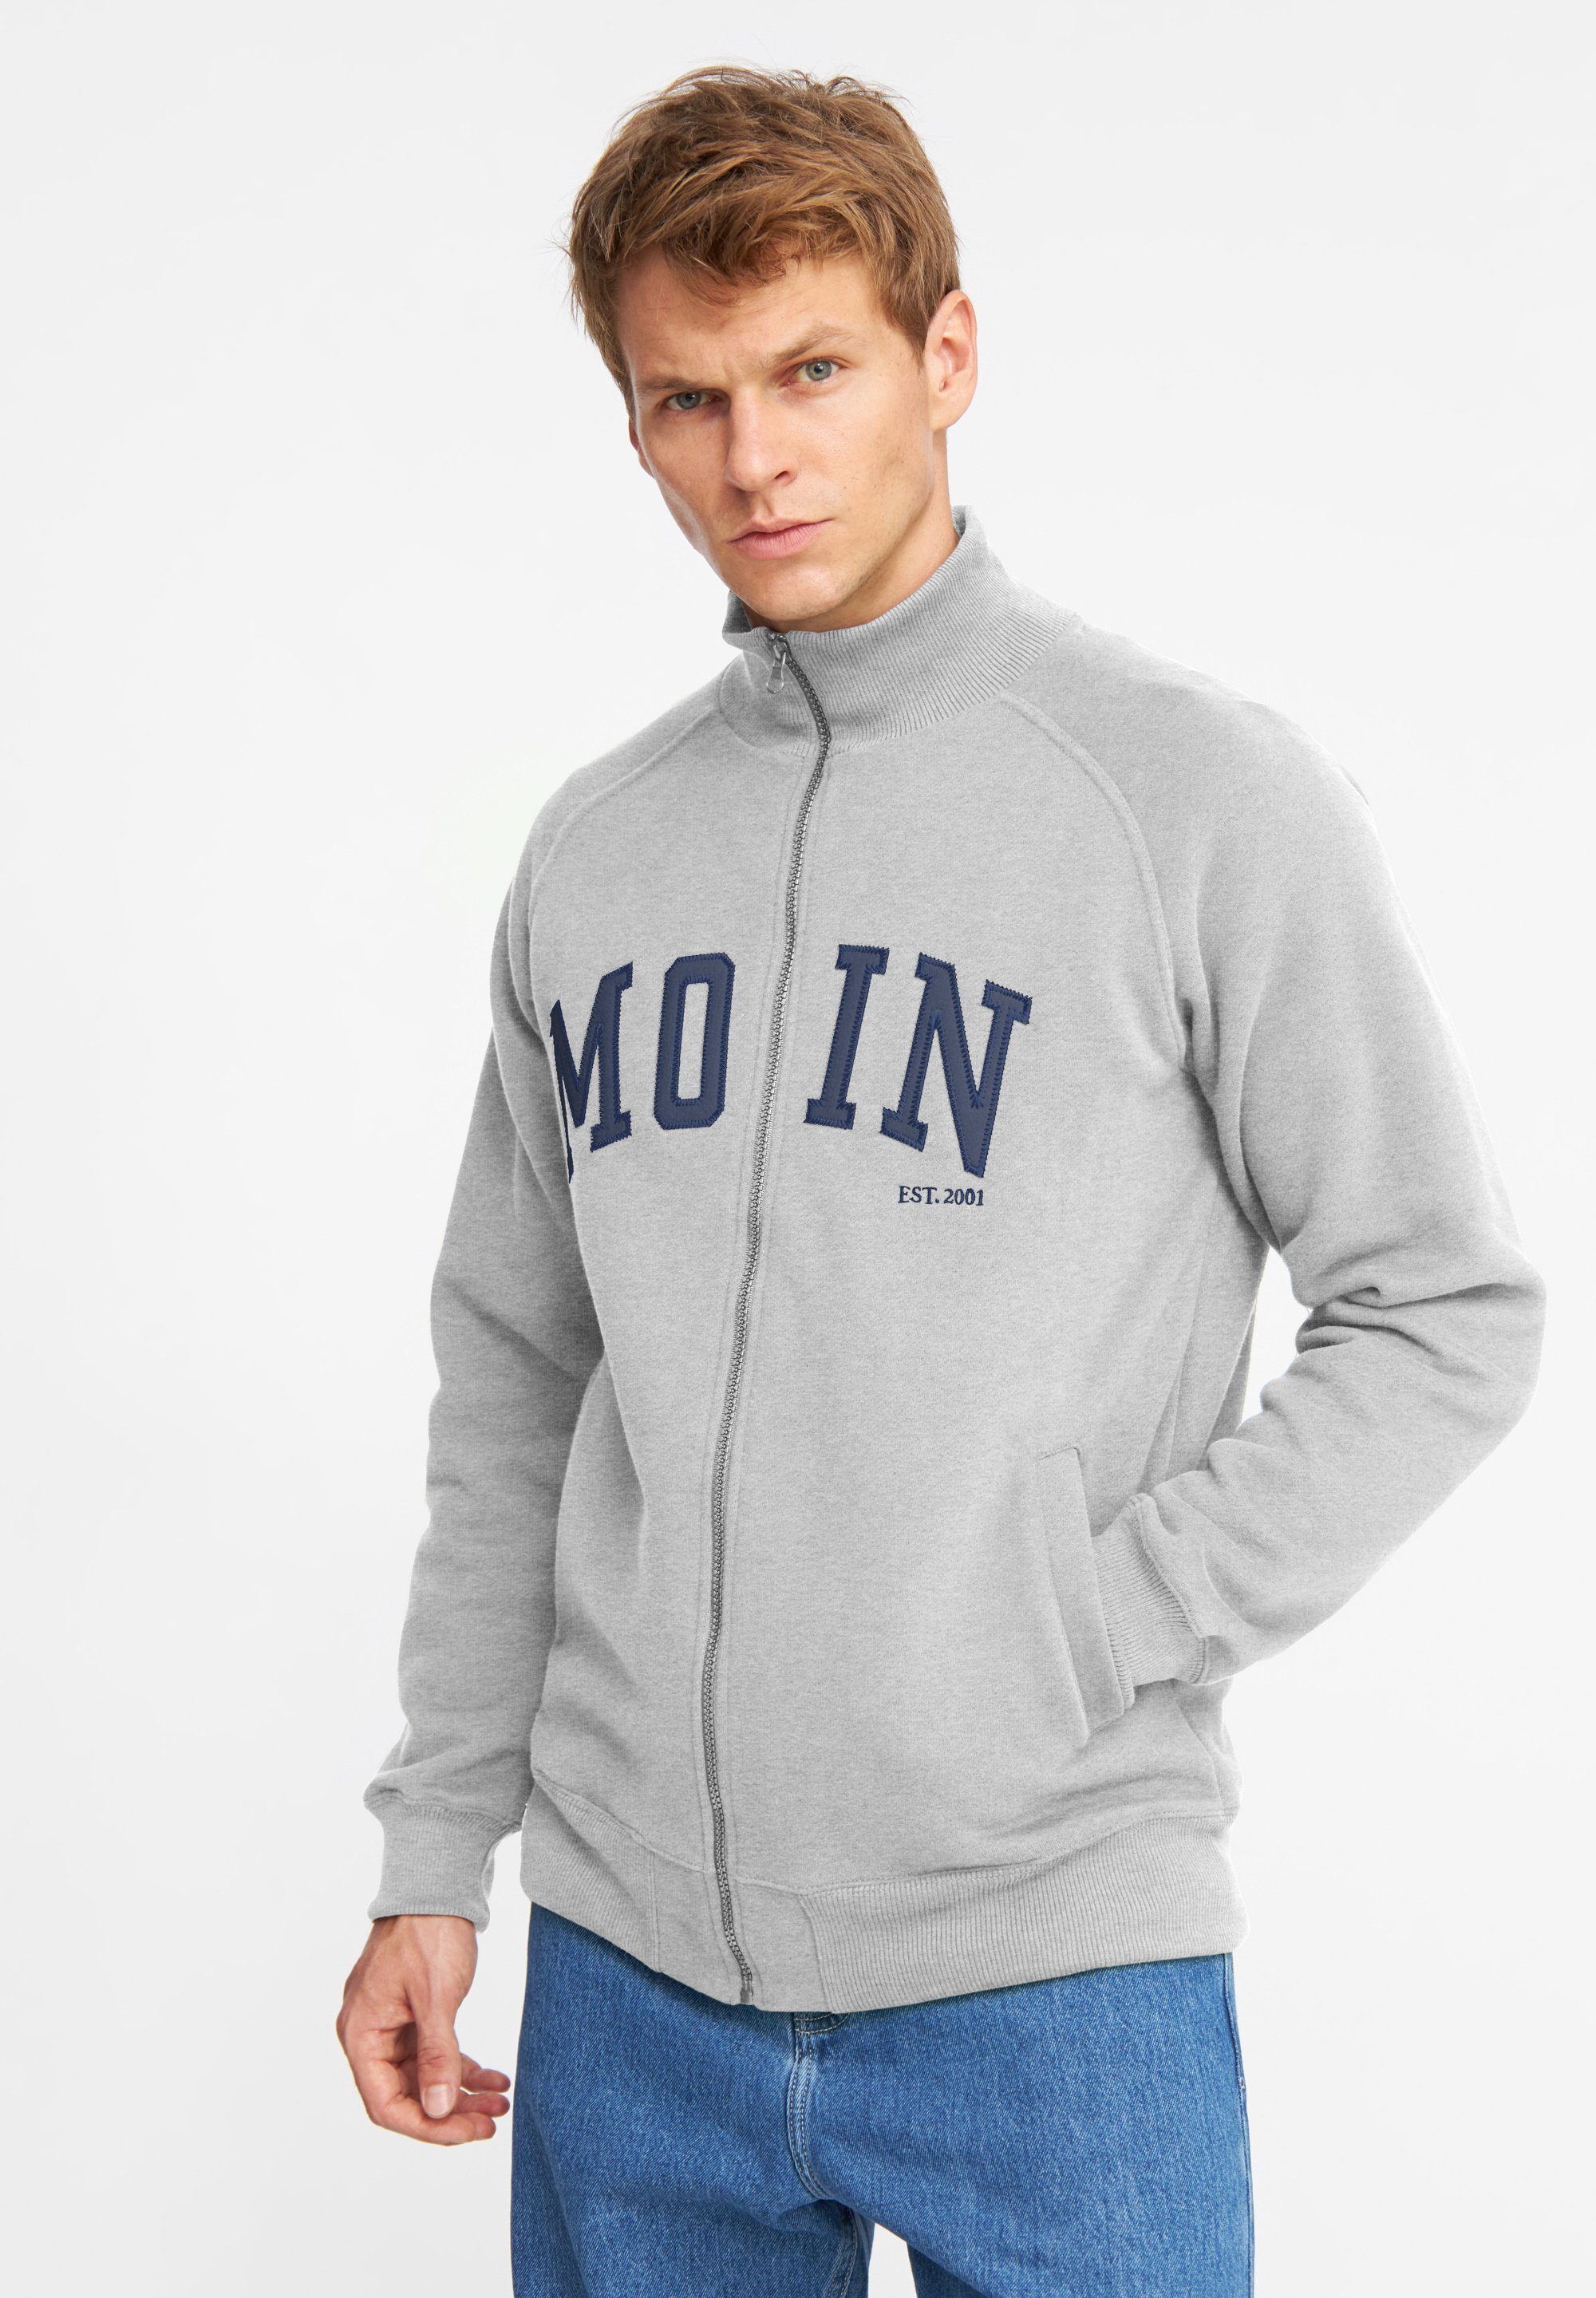 Derbe Sweatshirt MOIN Super weich, Made in Portugal grey melange